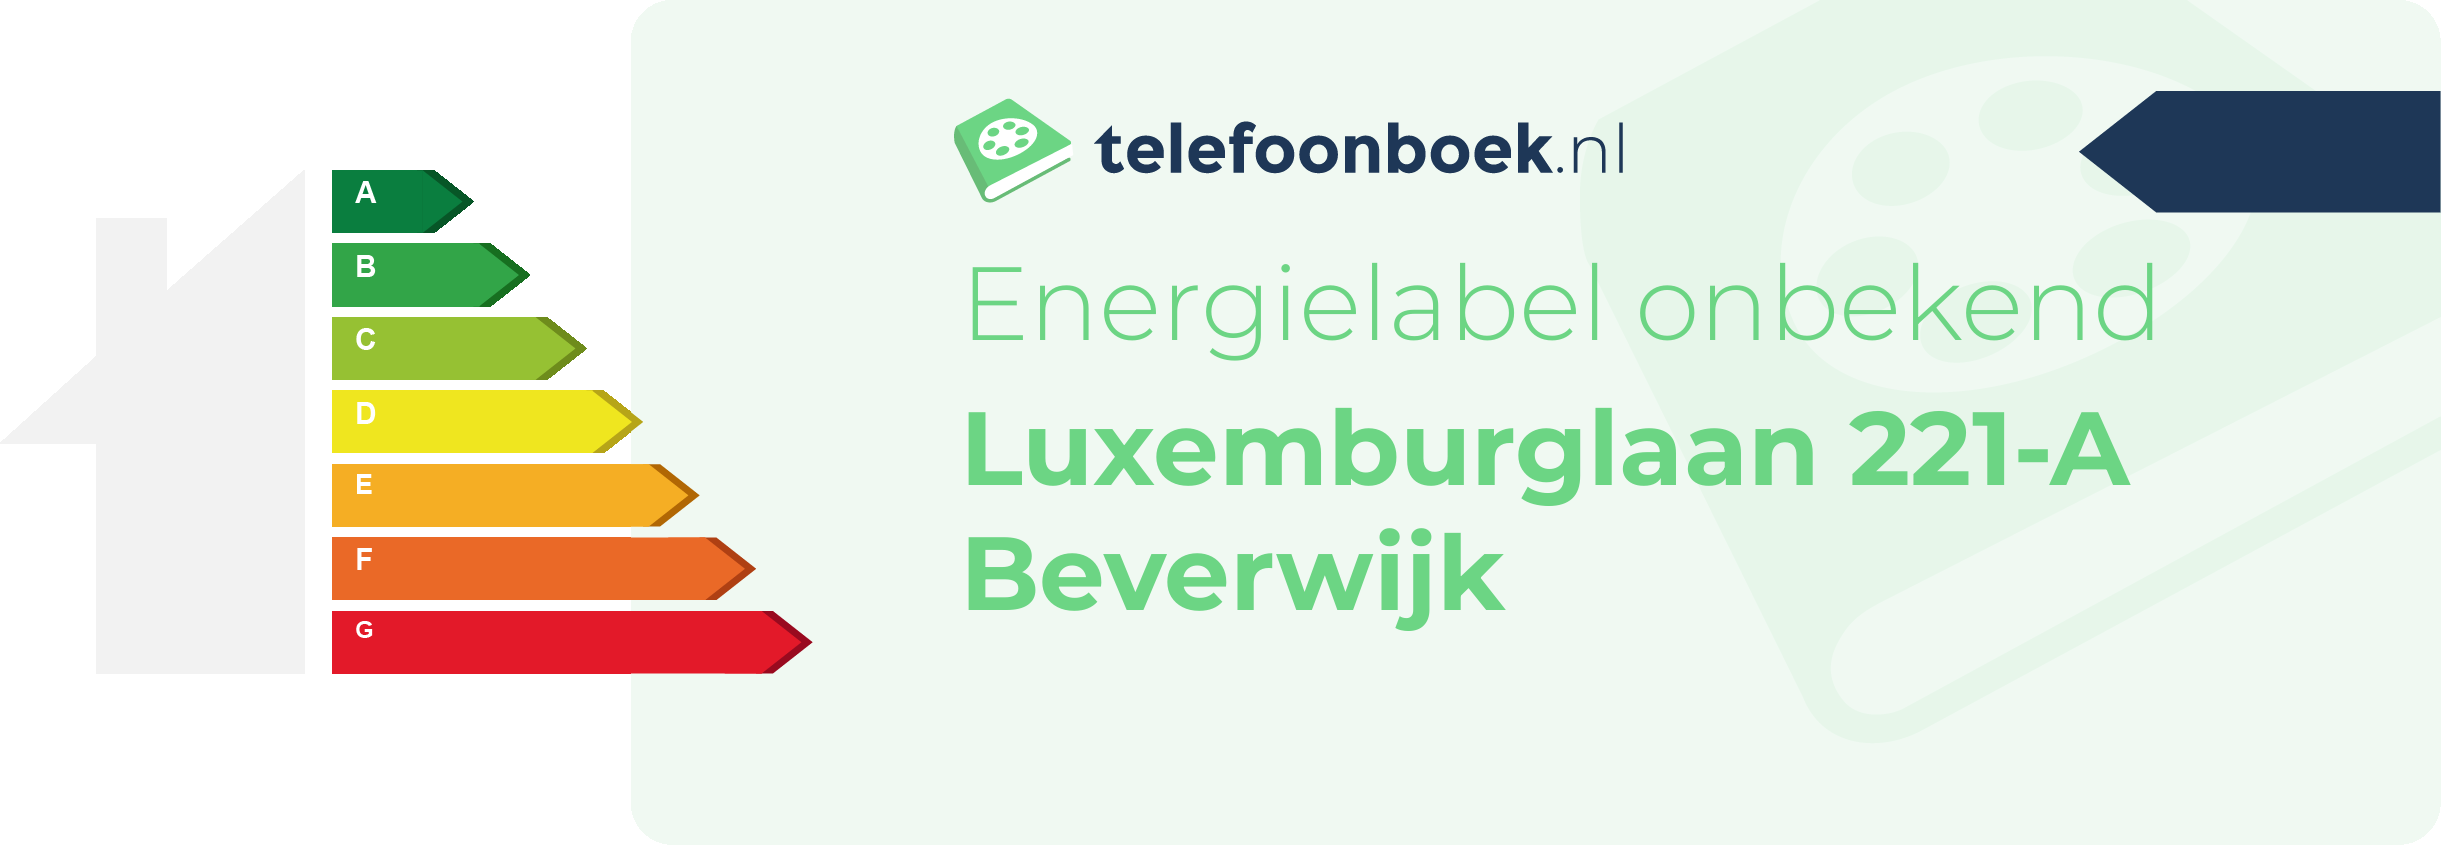 Energielabel Luxemburglaan 221-A Beverwijk